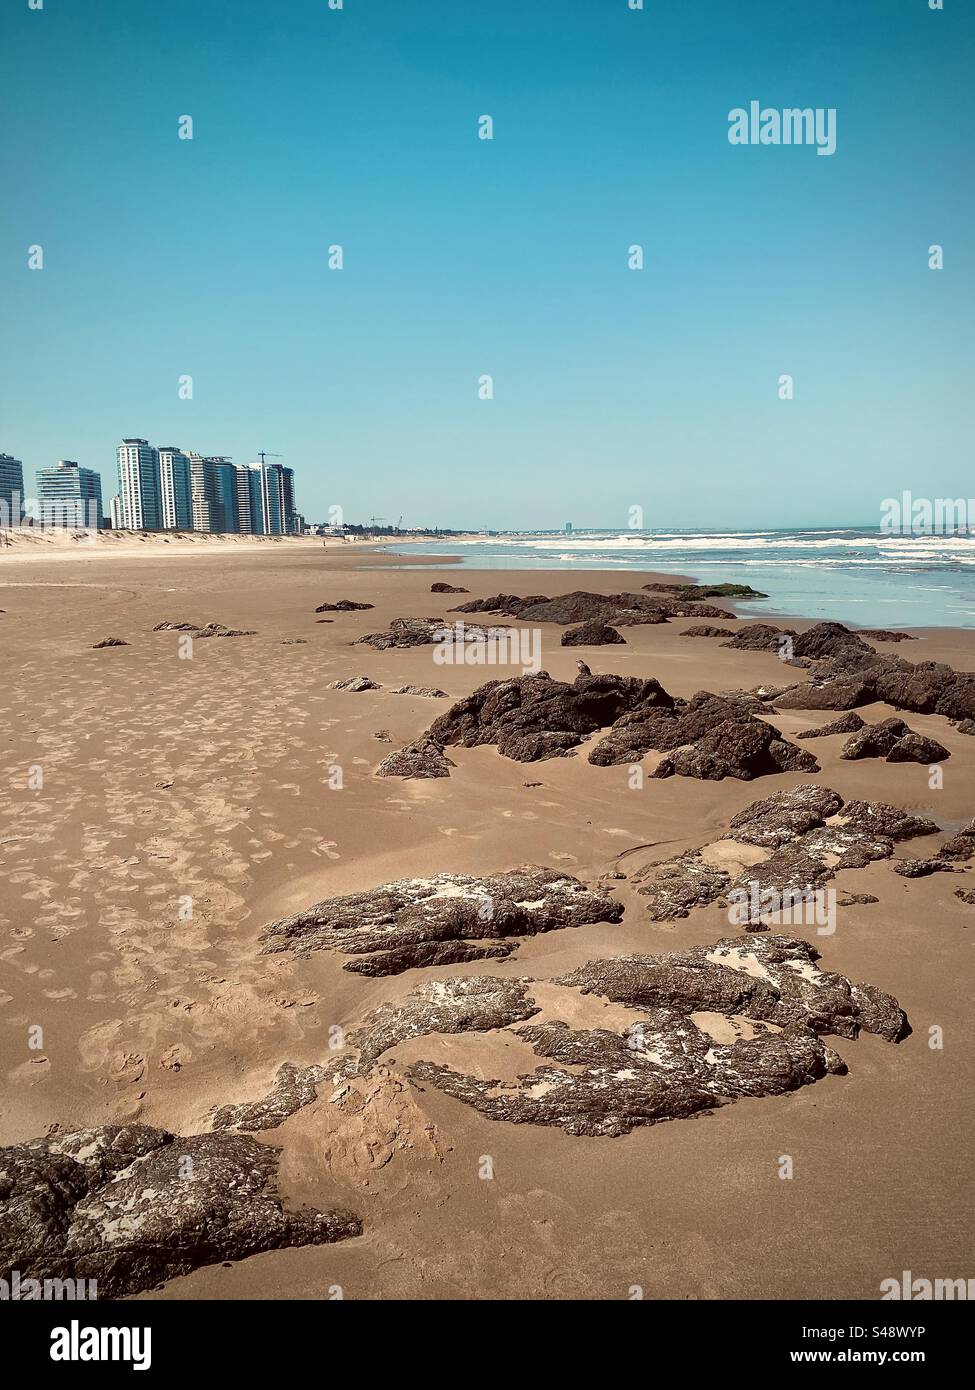 Beach in Punta del Este Uruguay playa de los dedos de mano Stock Photo